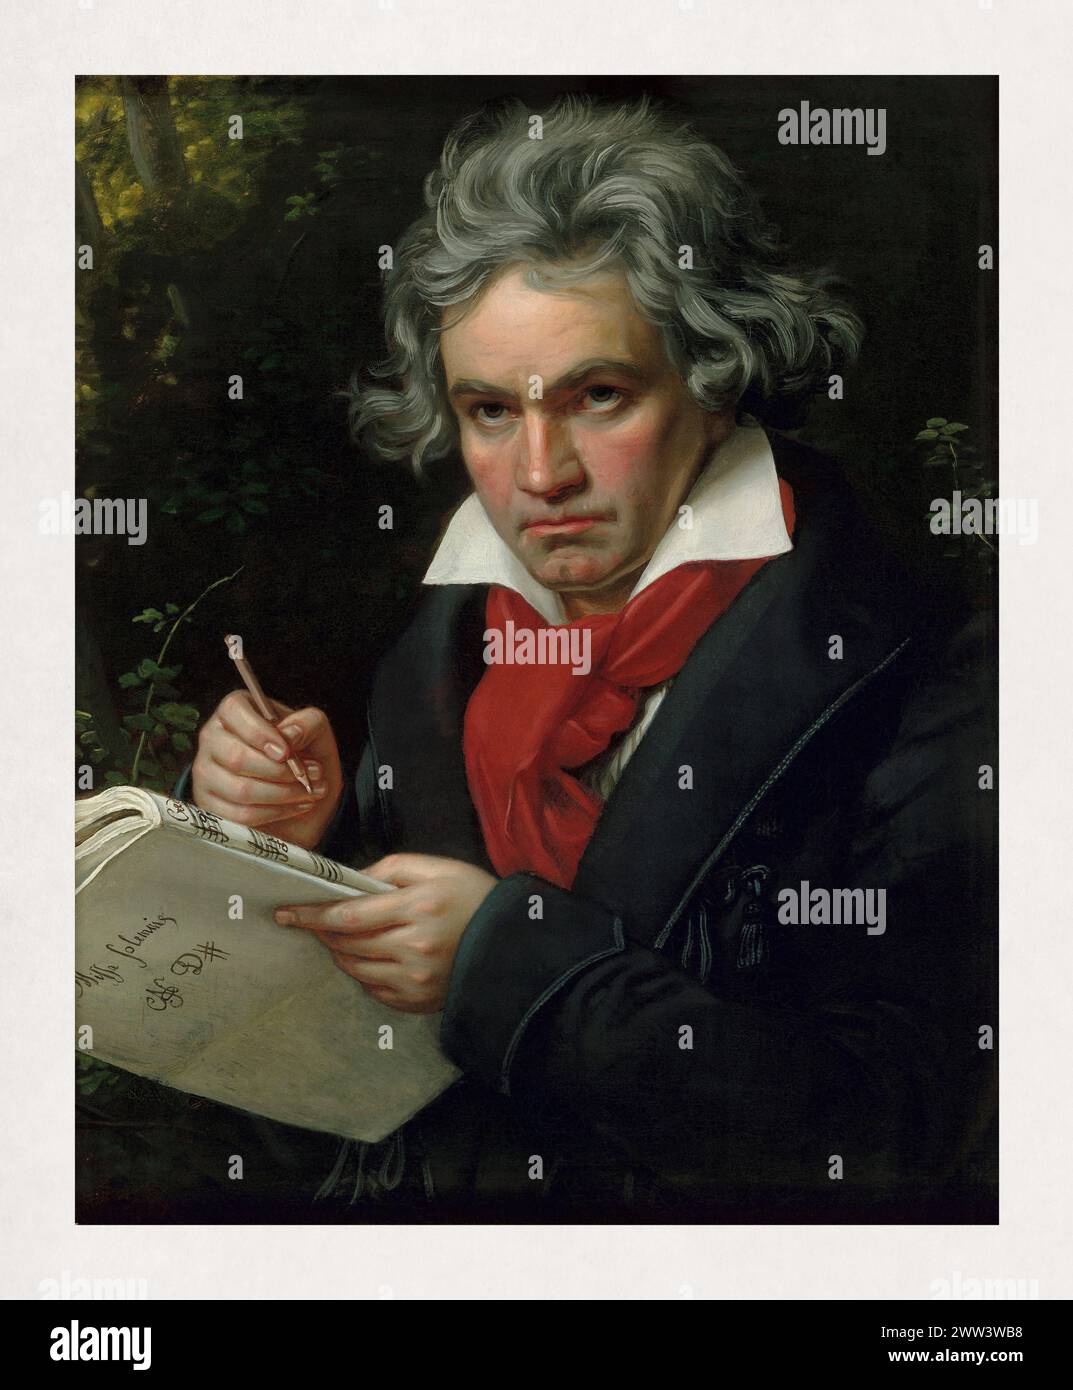 Ritratto del compositore e pianista tedesco Ludwig van Beethoven realizzato nel 1820 da Joseph Karl Stieler. Foto Stock